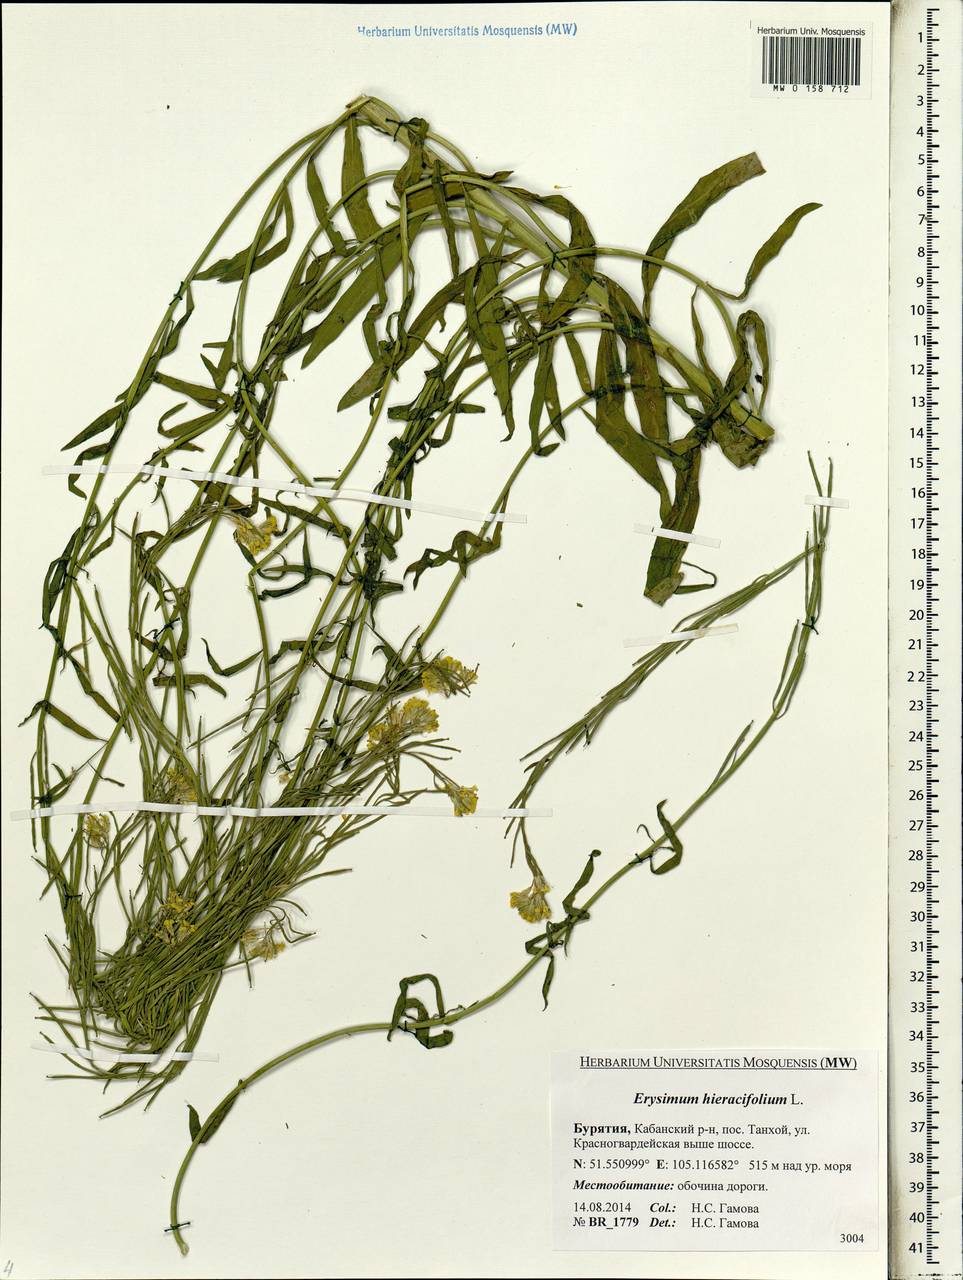 Erysimum hieraciifolium L., Siberia, Baikal & Transbaikal region (S4) (Russia)